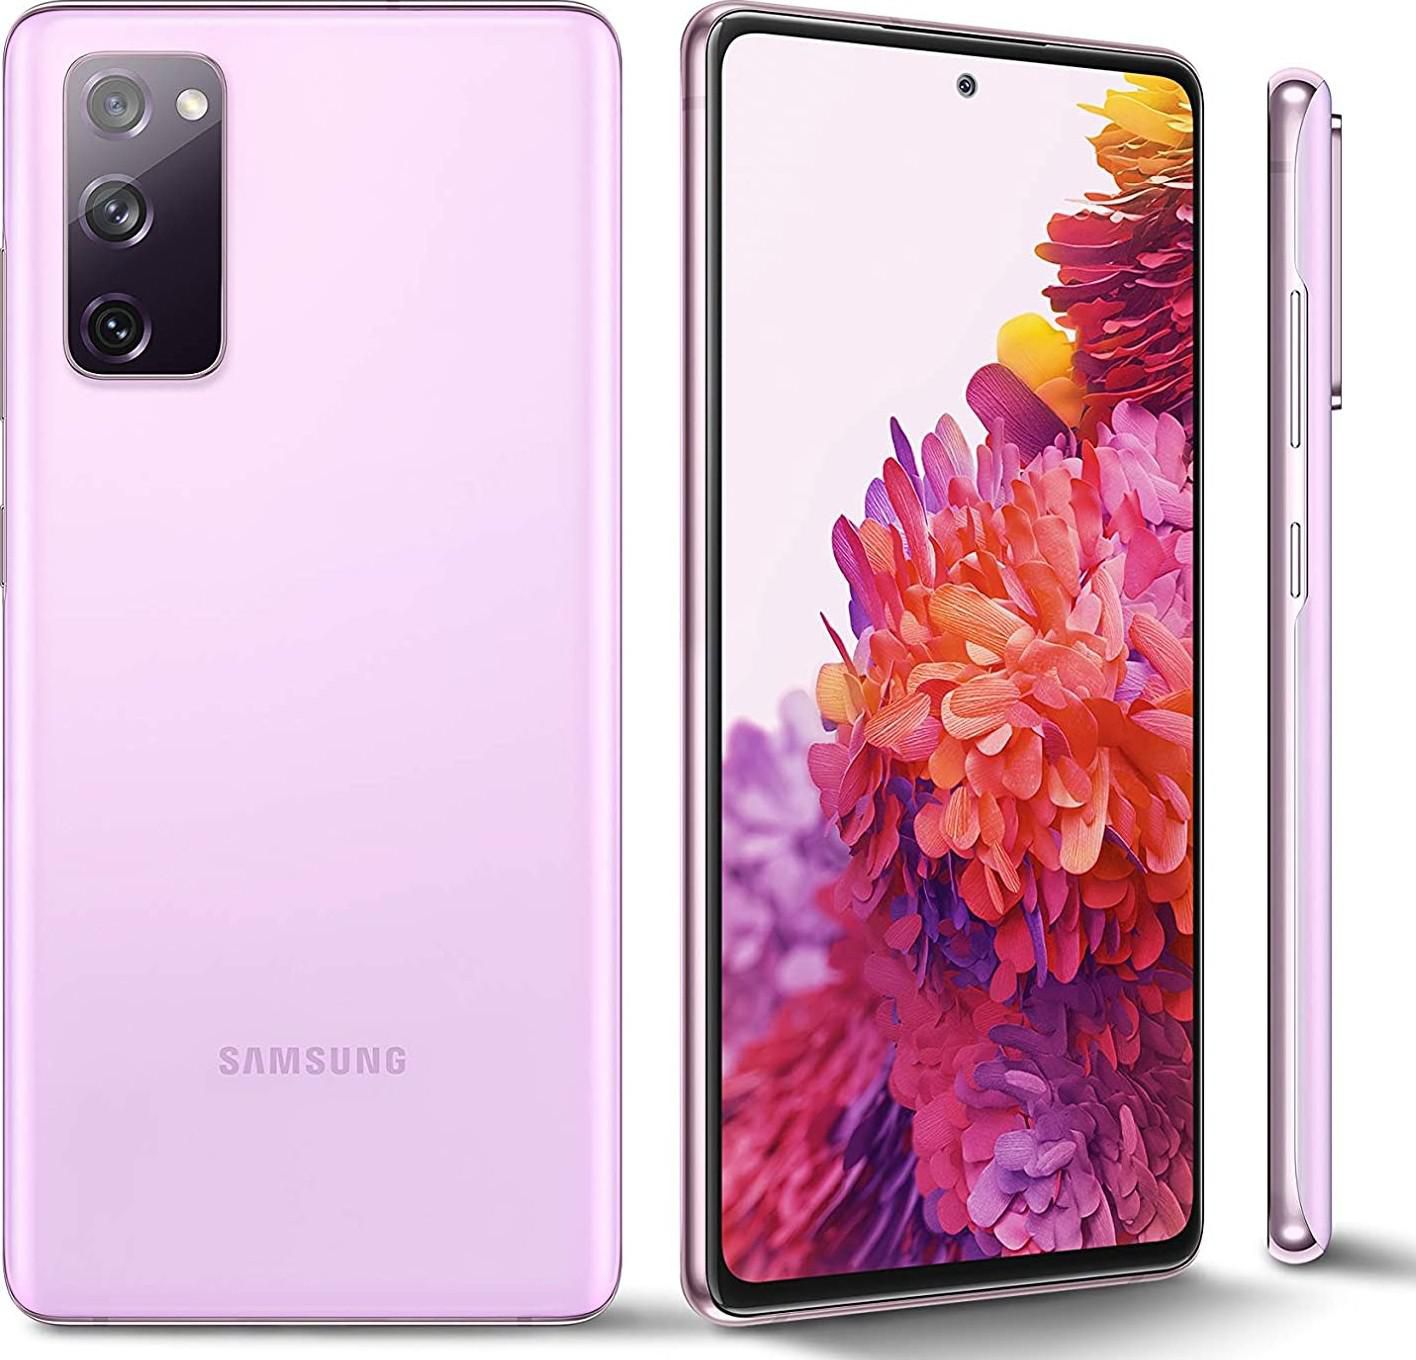 Samsung Galaxy S20 FE Hybrid Dual SIM 128GB 8GB RAM 5G UAE Version 1 Year Local Brand Warranty - Lavender